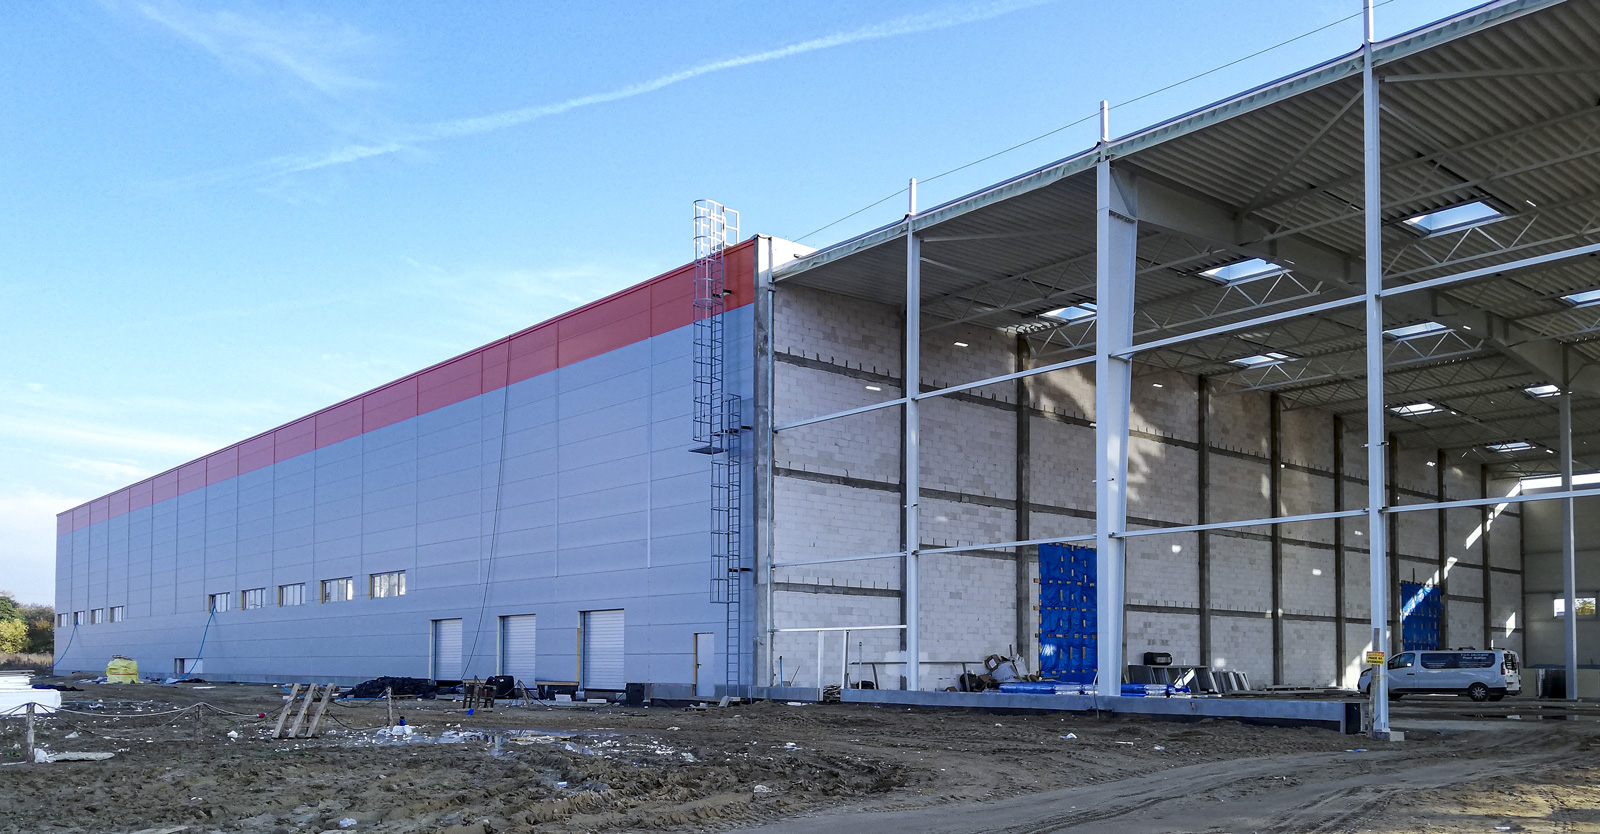 dalszy etap inwestycji - hala produkcyjno-magazynowa, o powierzchni 12.000 m2, dla Fagum-Stomil, w Łukowie, woj. lubelskie